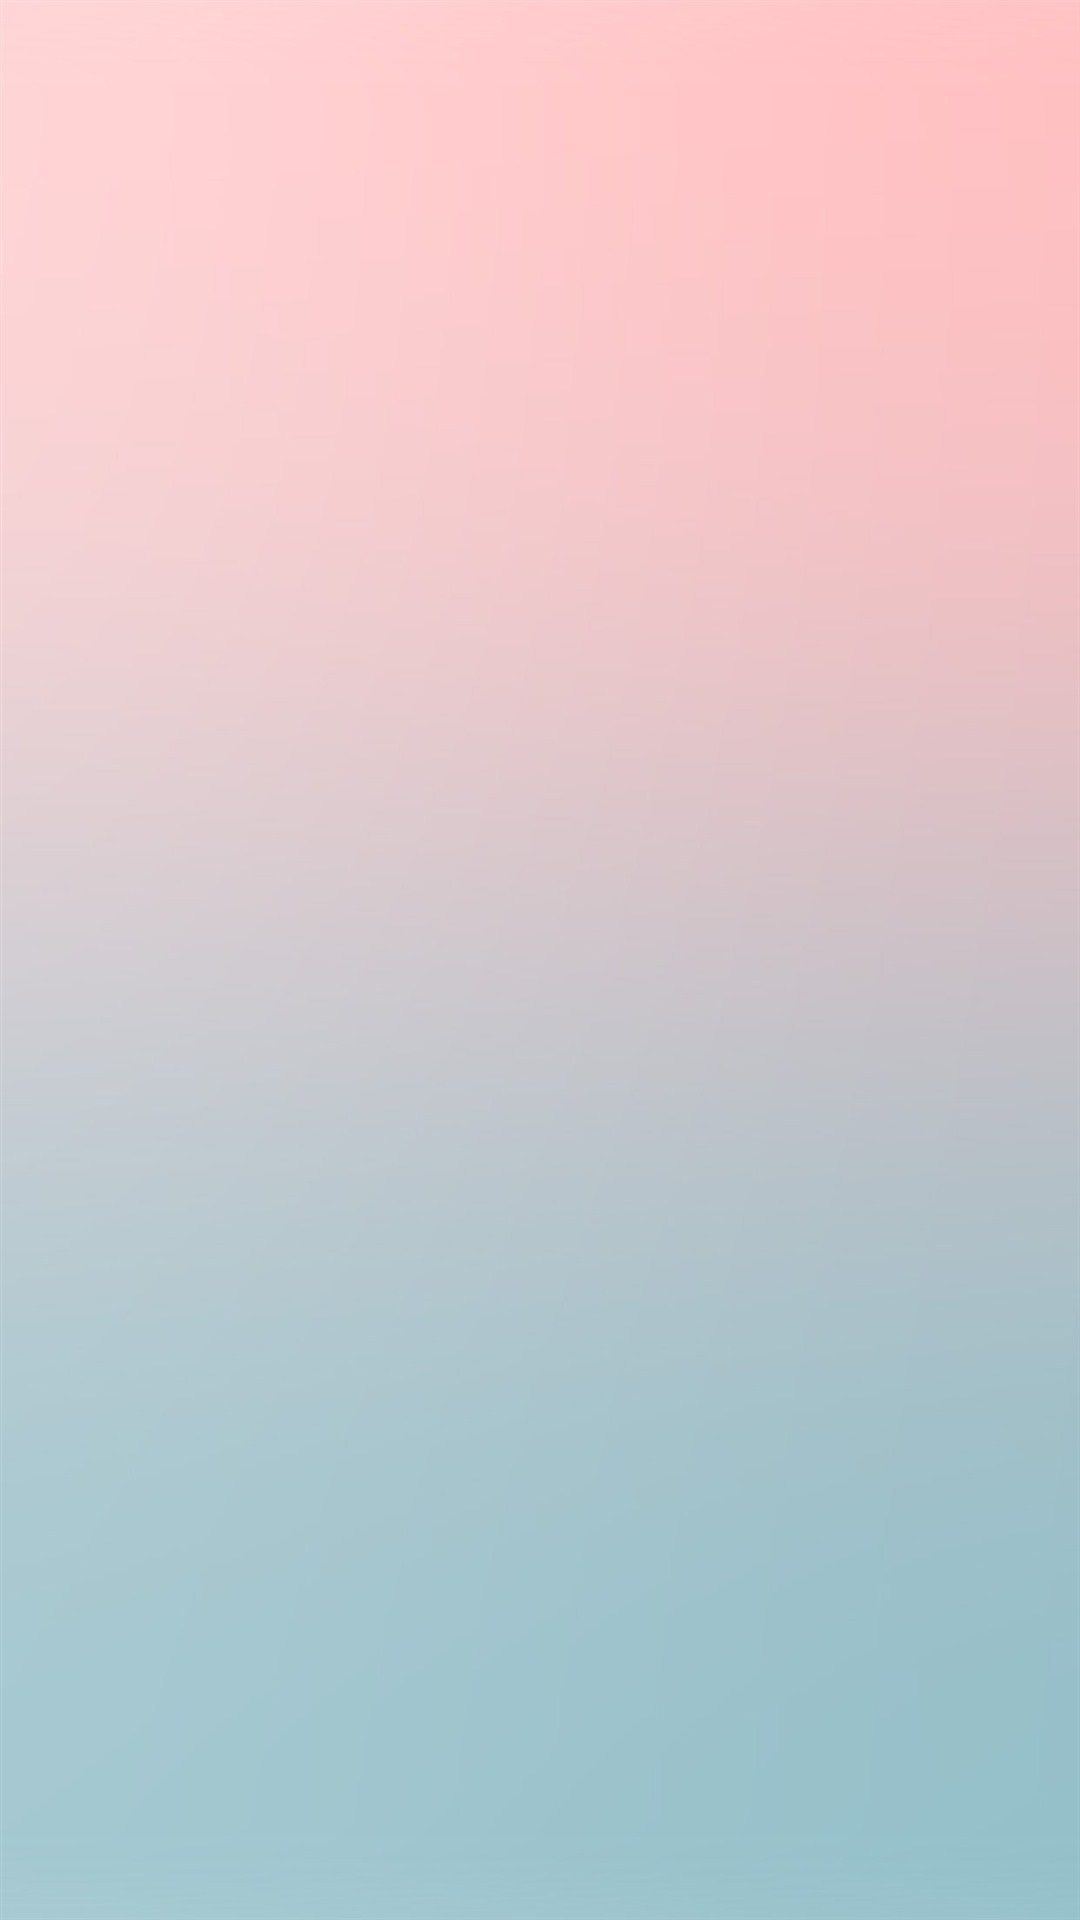 Rosa azul suave pastel desenfoque gradación iPhone 8 Fondos descarga gratuita